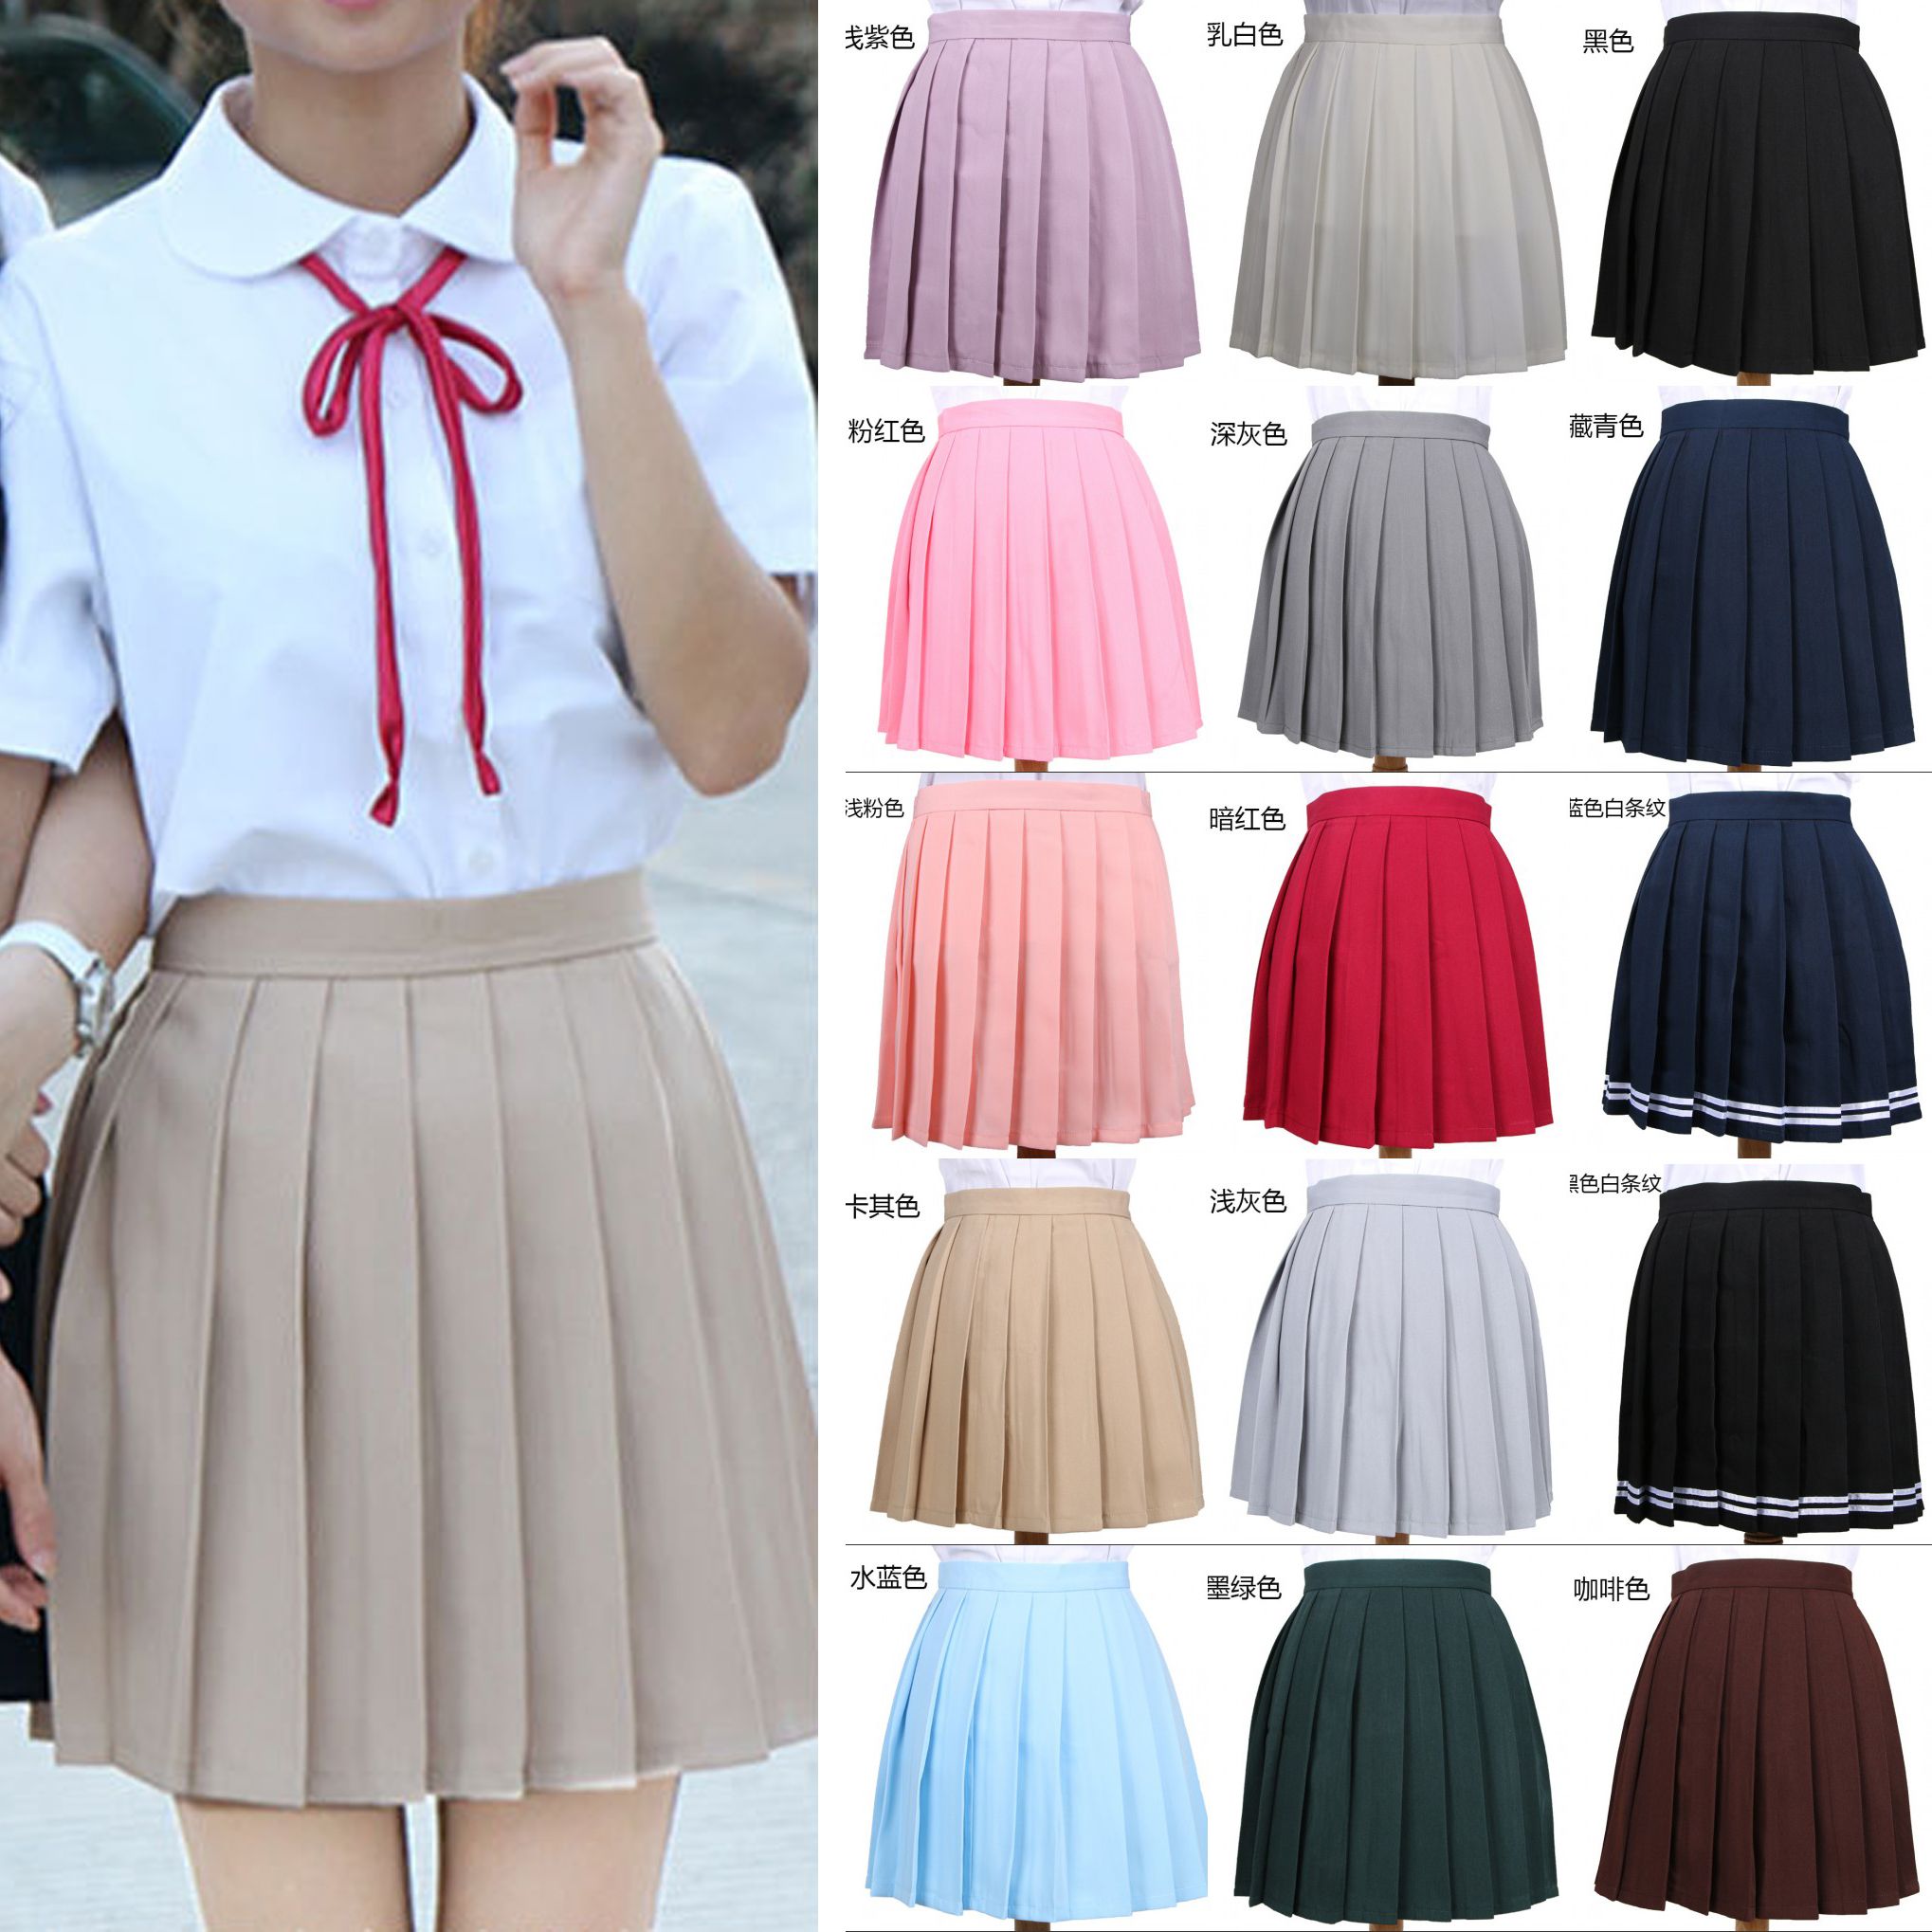 Falda plisada de cintura alta para niñas Uniforme escolar de cosplay Anime JK Falda plisada niñas Uniforme escolar Una minifalda de línea